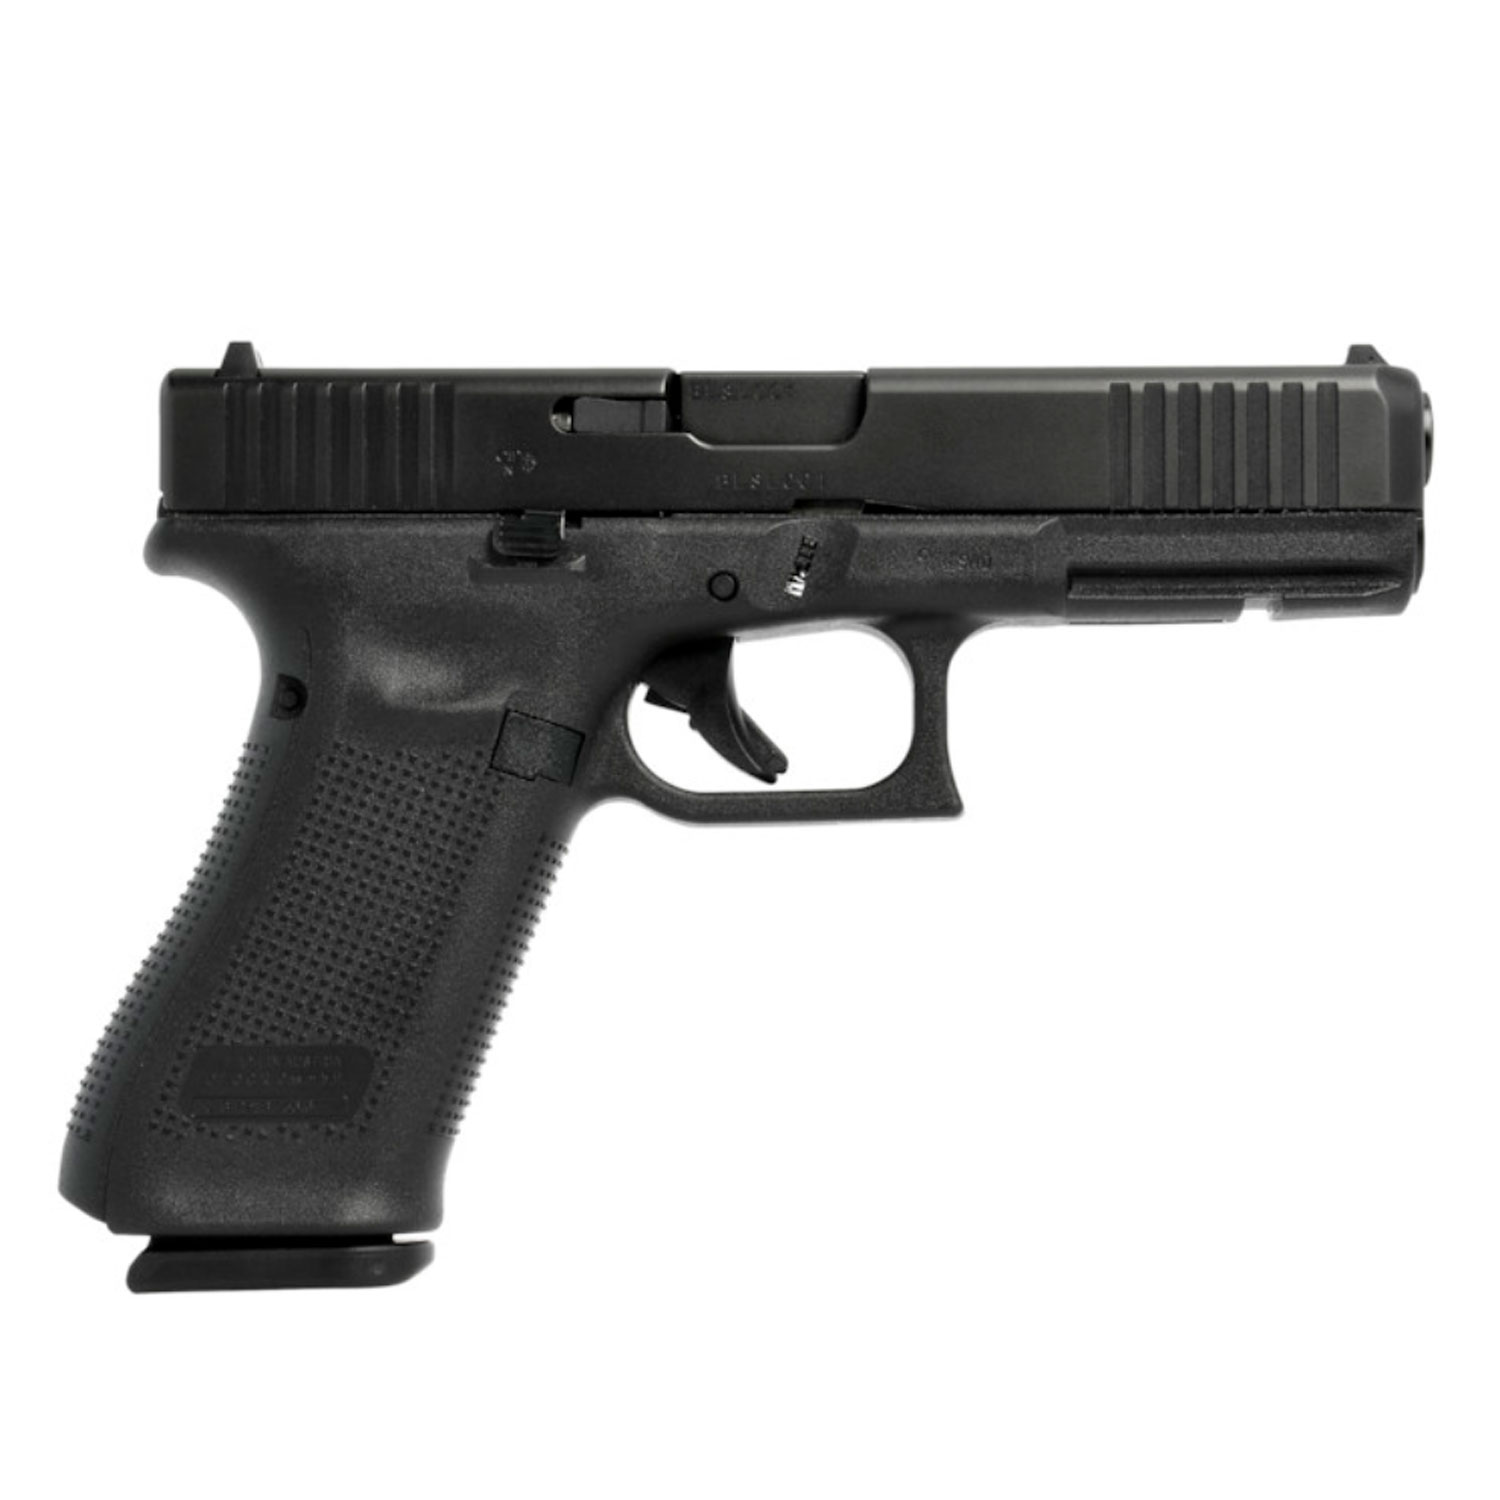 Glock 17 Gen5 9mm Pistol w/ Front Serrations, 17 Round Magazines: MGW